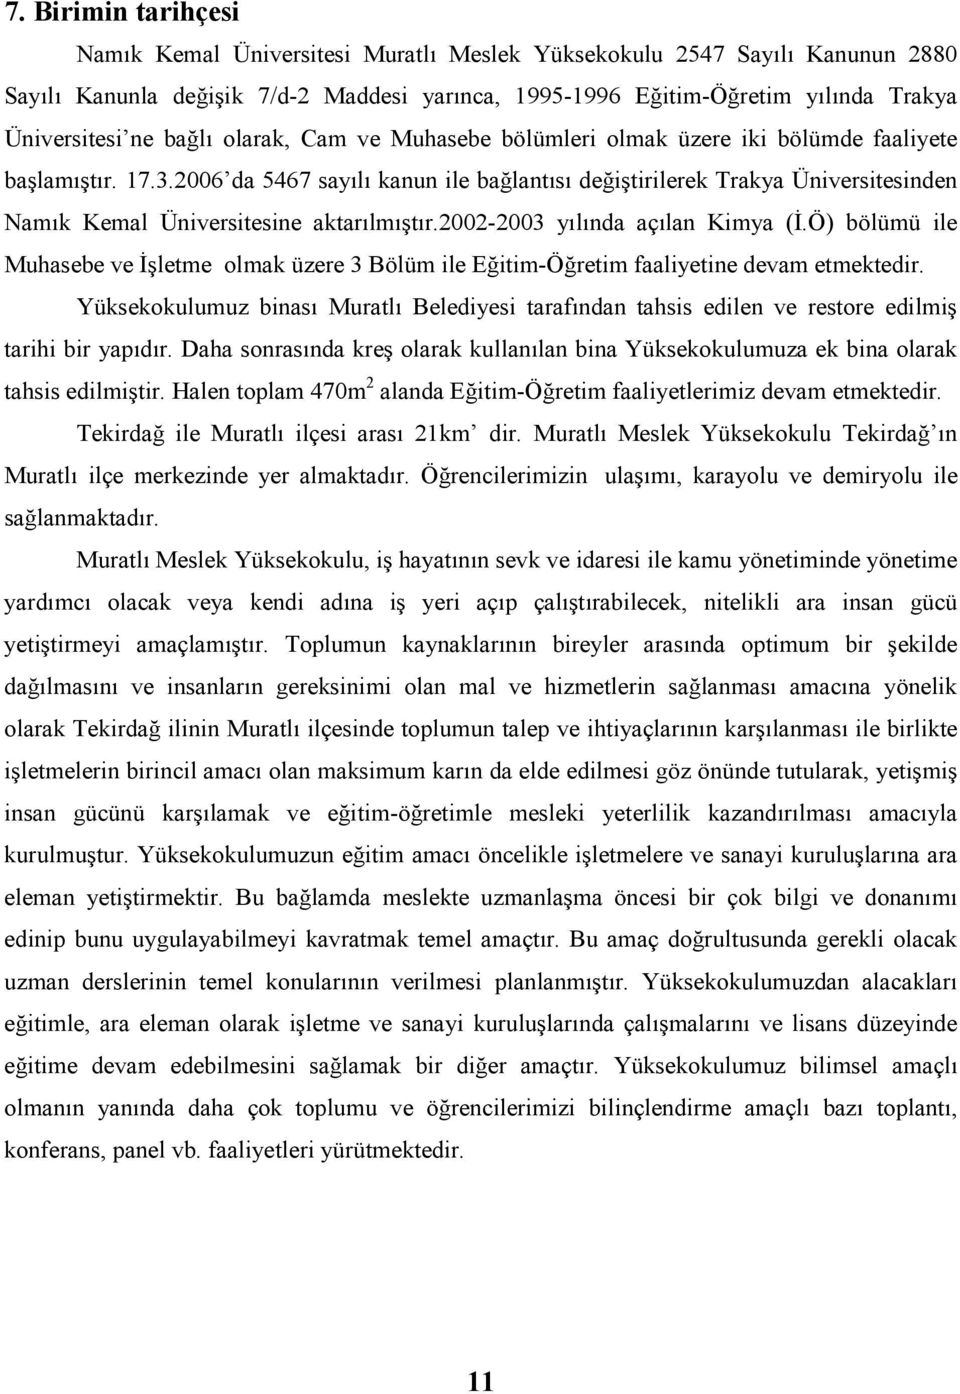 2006 da 5467 sayılı kanun ile bağlantısı değiştirilerek Trakya Üniversitesinden Namık Kemal Üniversitesine aktarılmıştır.2002-2003 yılında açılan Kimya (Đ.